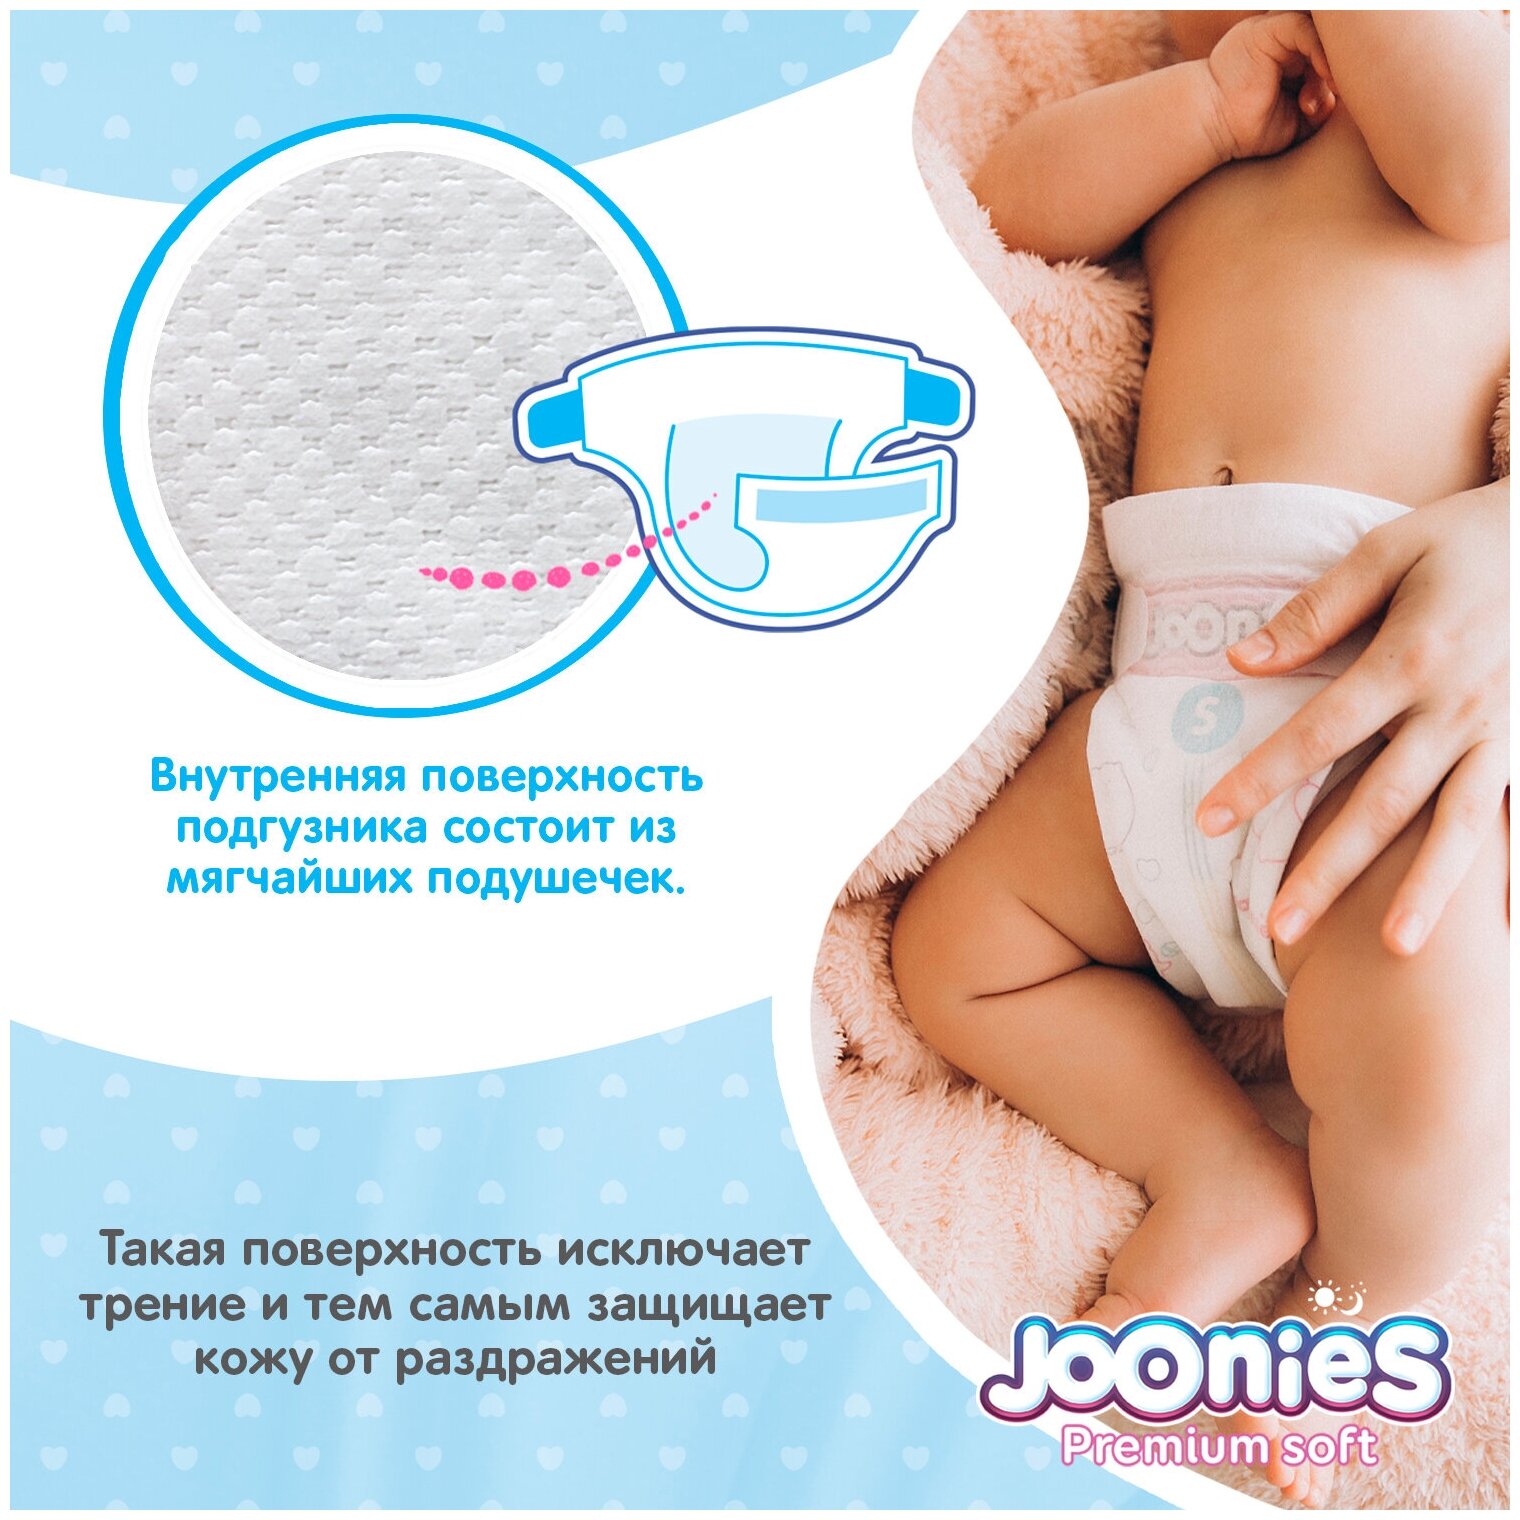 Подгузники Joonies Premium Soft, размер L (9-14кг), 52шт. - фото №3